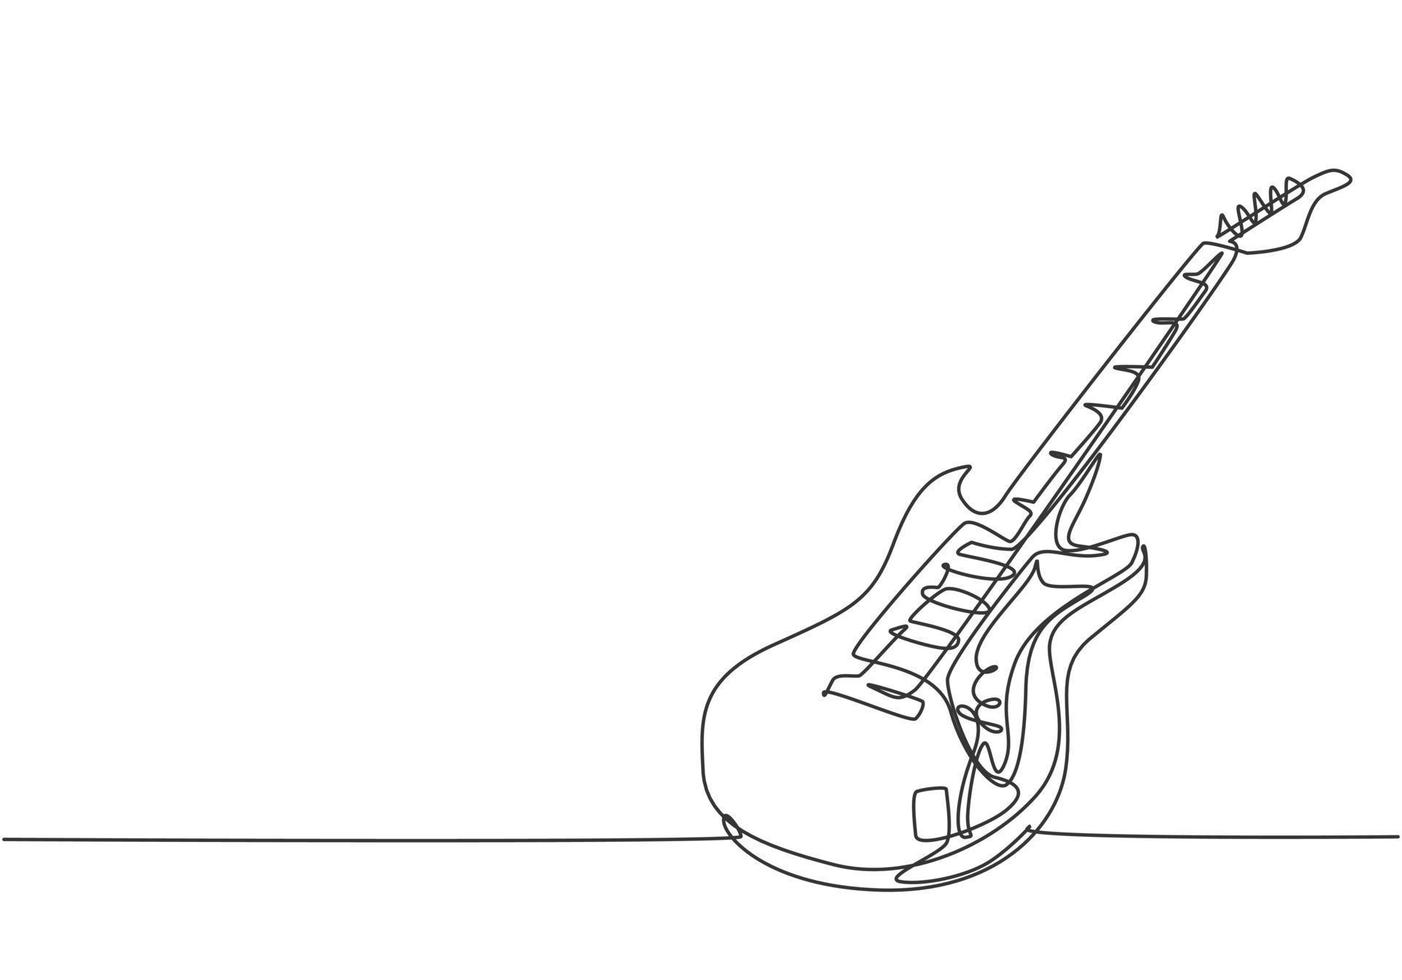 enkele doorlopende lijntekening van elektrische gitaar. snaarmuziek instrumenten concept. moderne één lijn tekenen grafisch ontwerp vectorillustratie vector